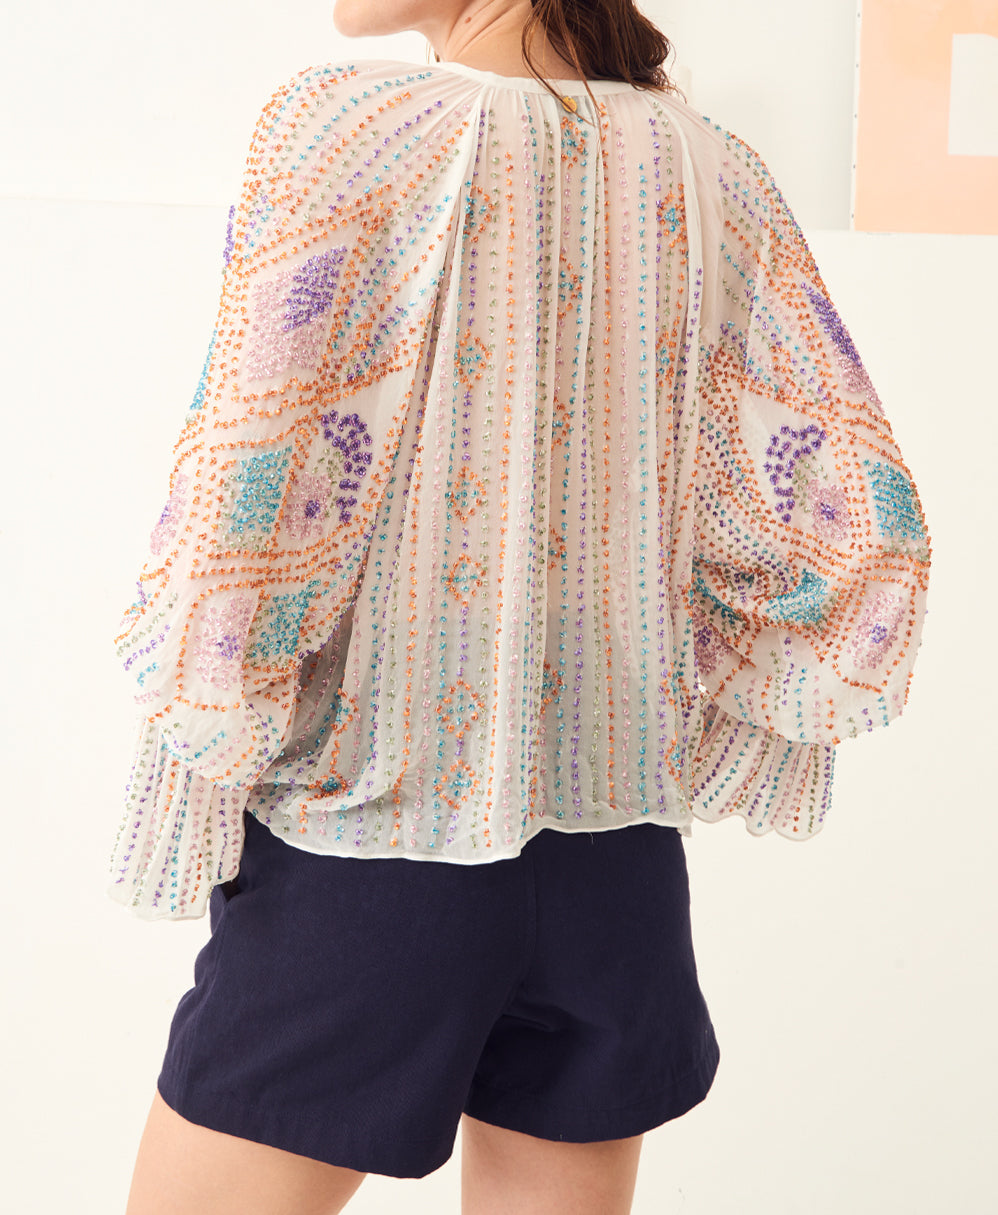 Emilia embroidered blouse